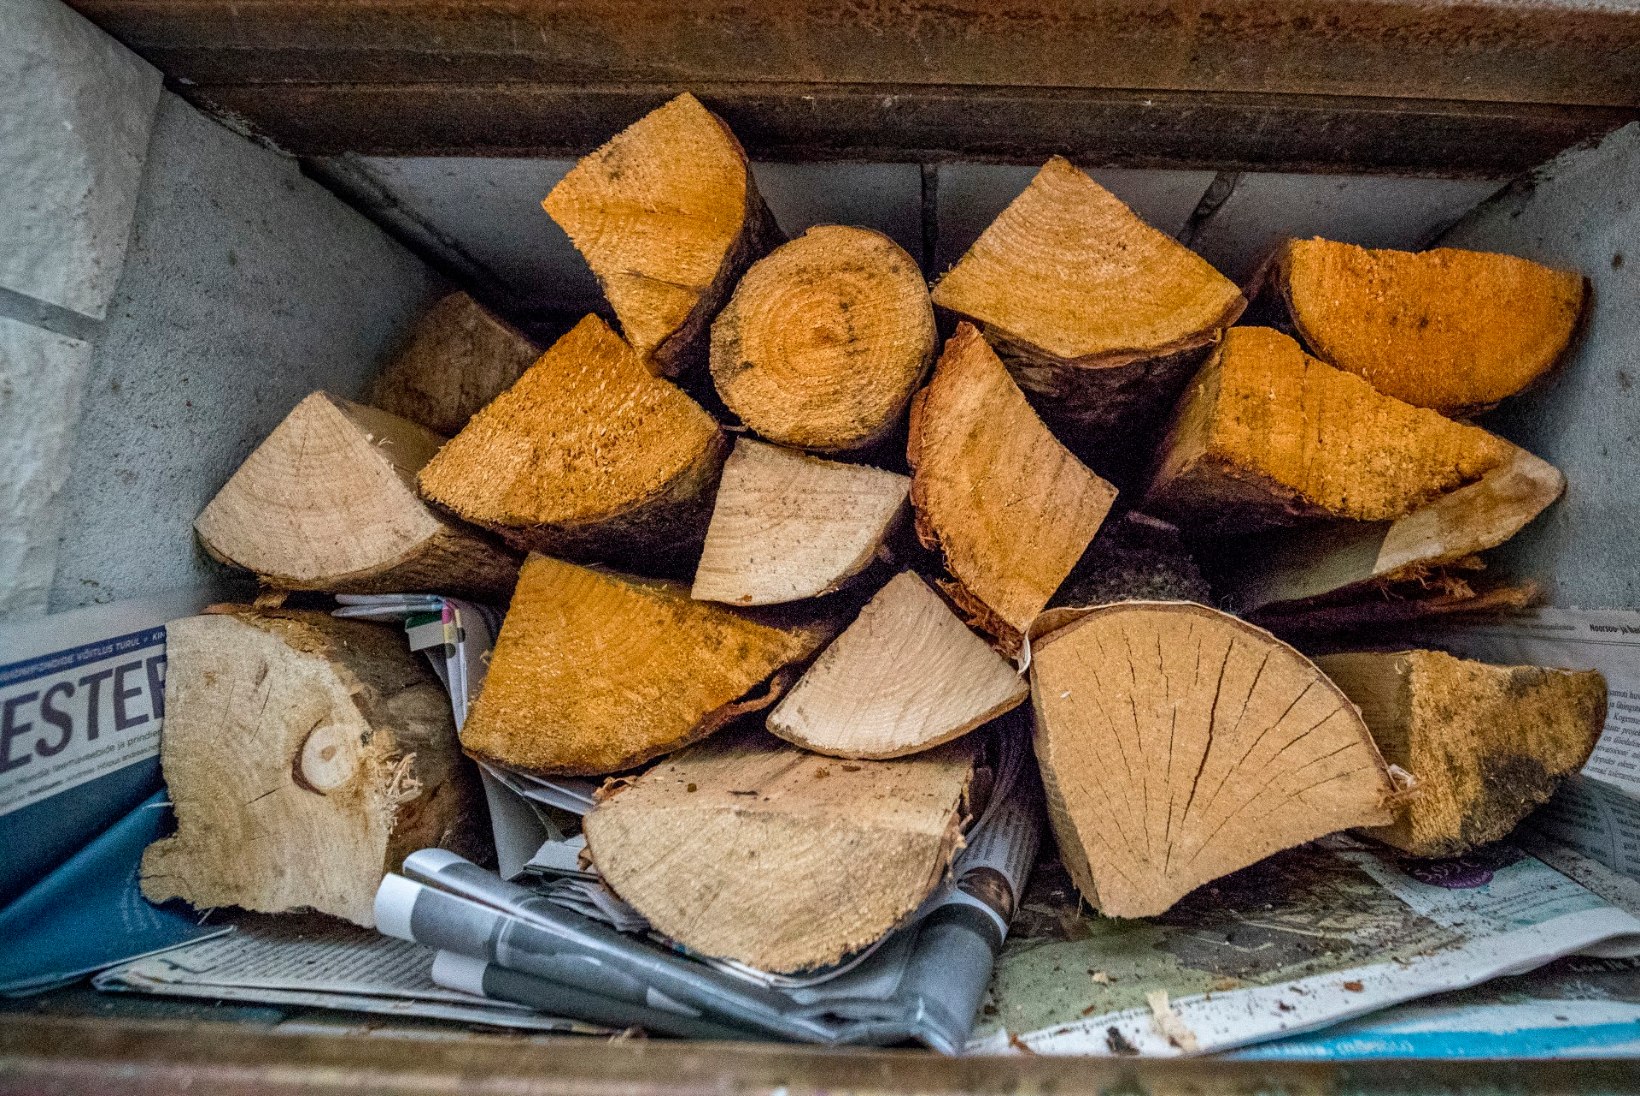 Käes on viimane aeg valida küttepuid. Millist puitu eelistada?